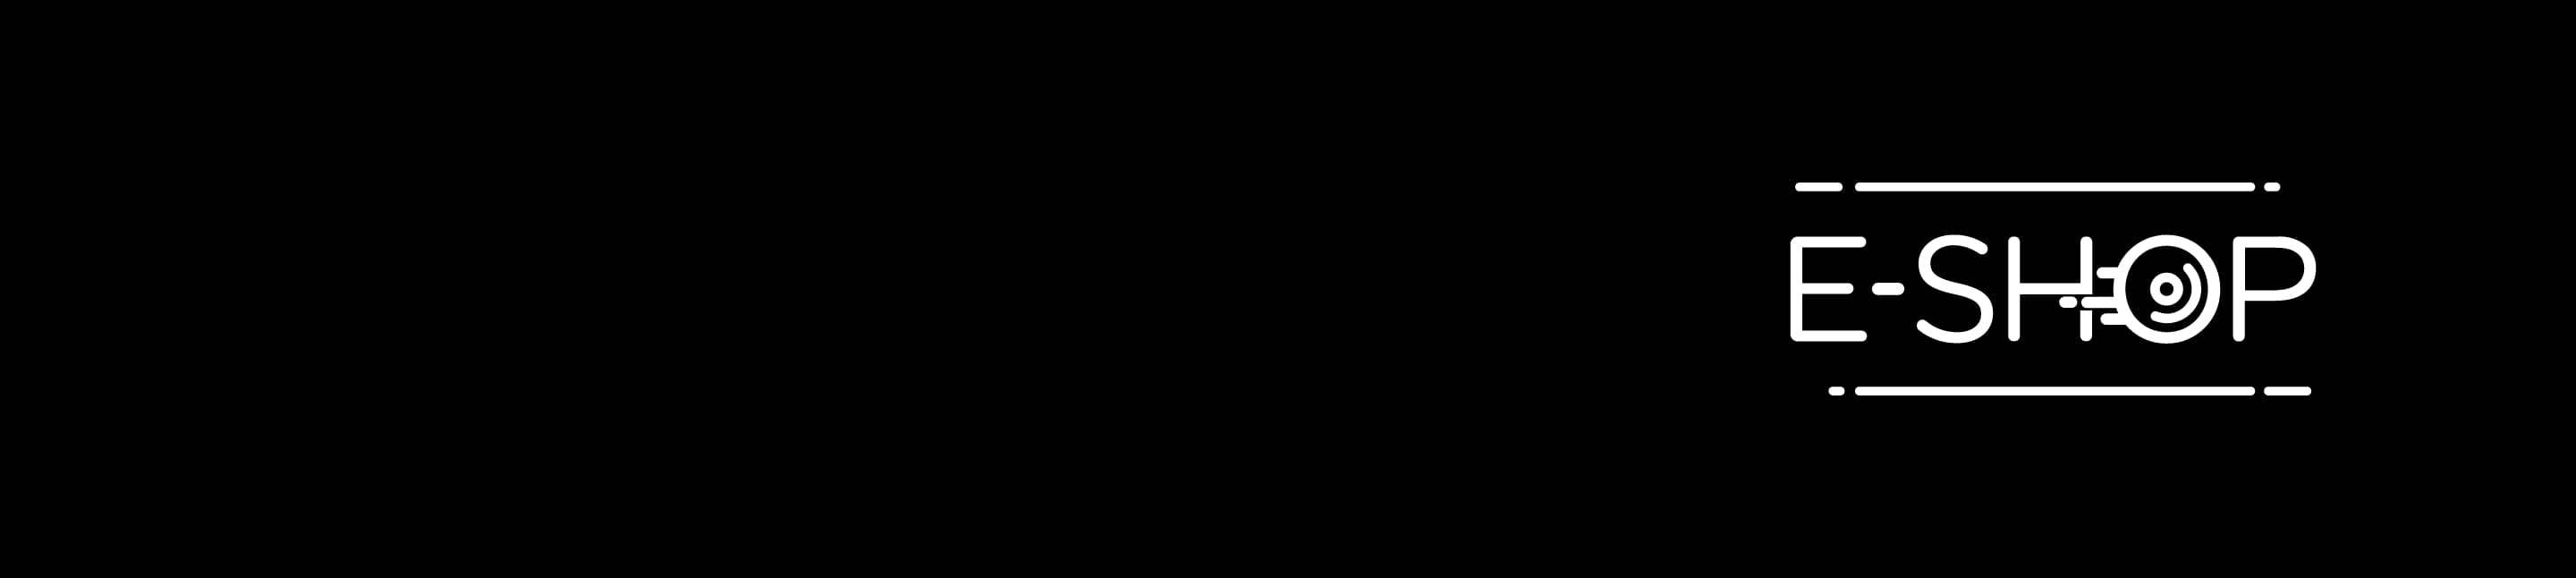 E-shop logo